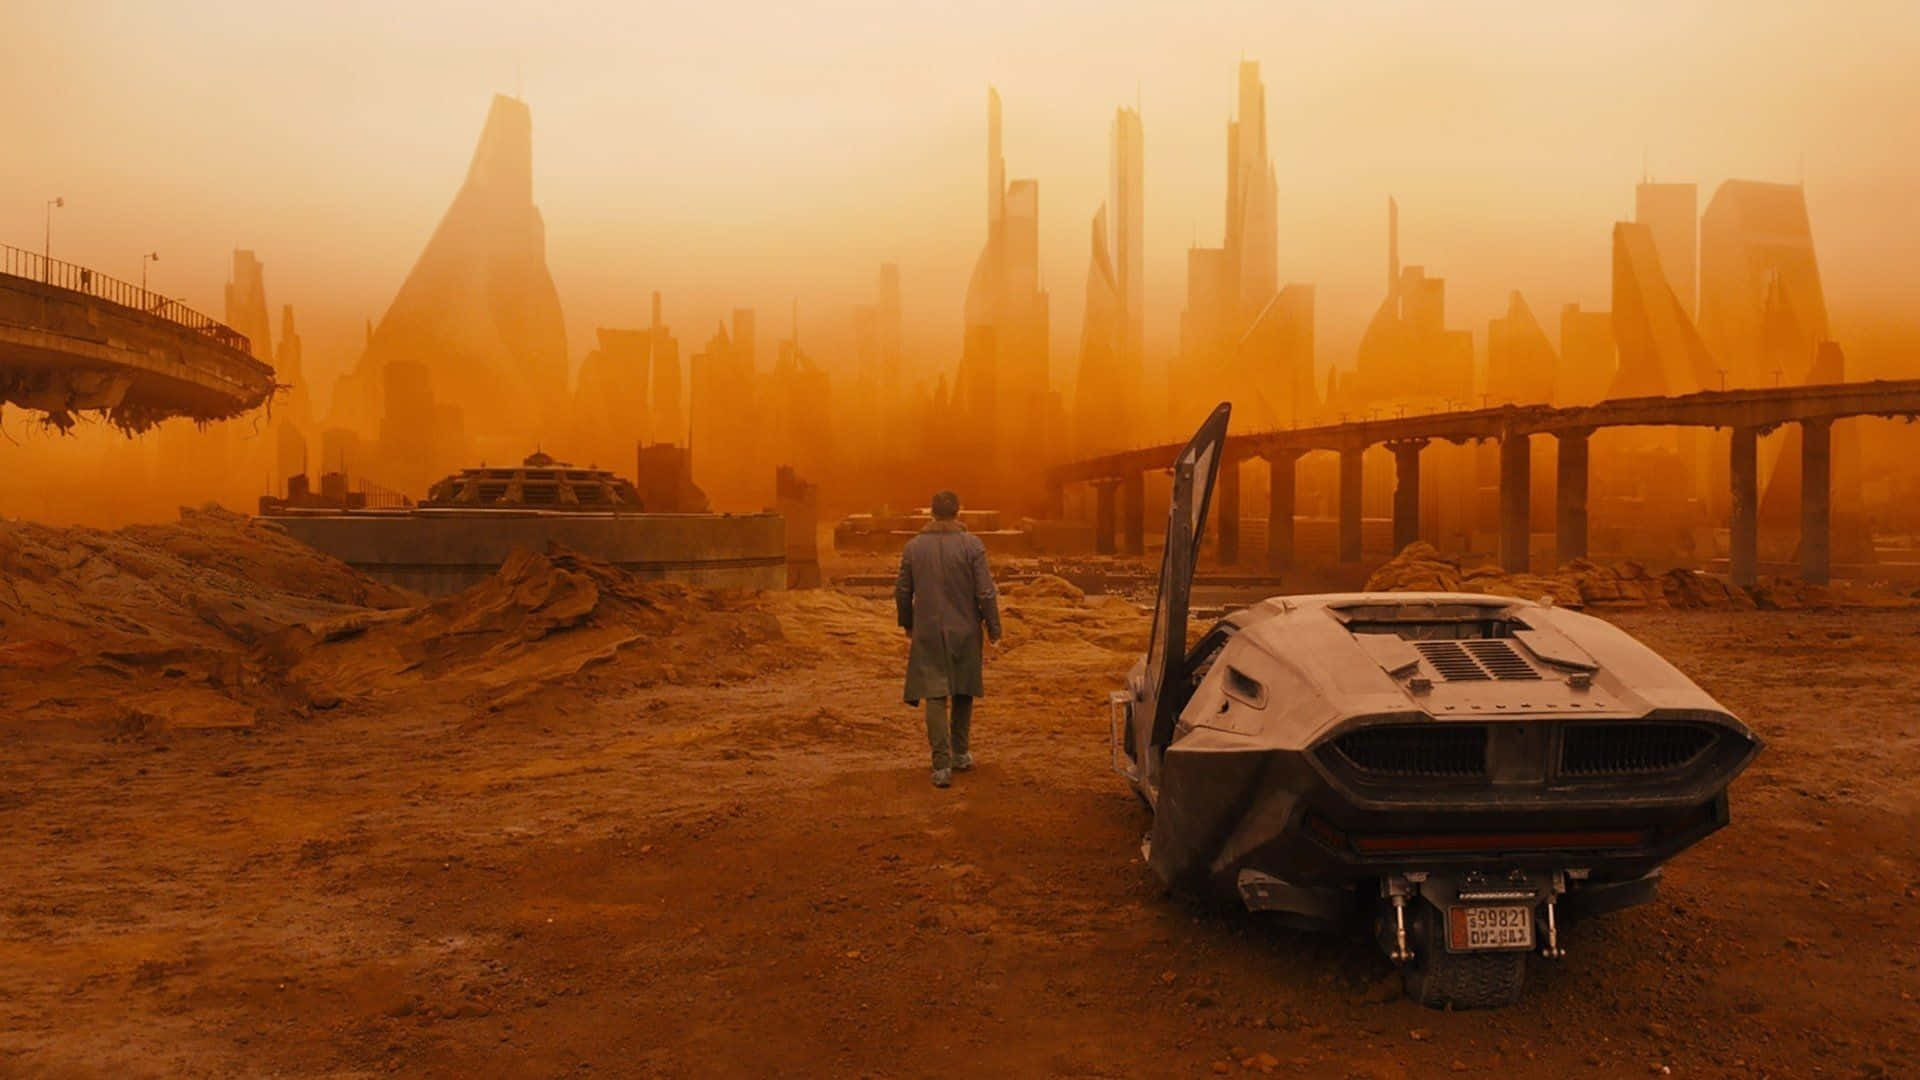 Hintergrundbildvon Blade Runner 2049